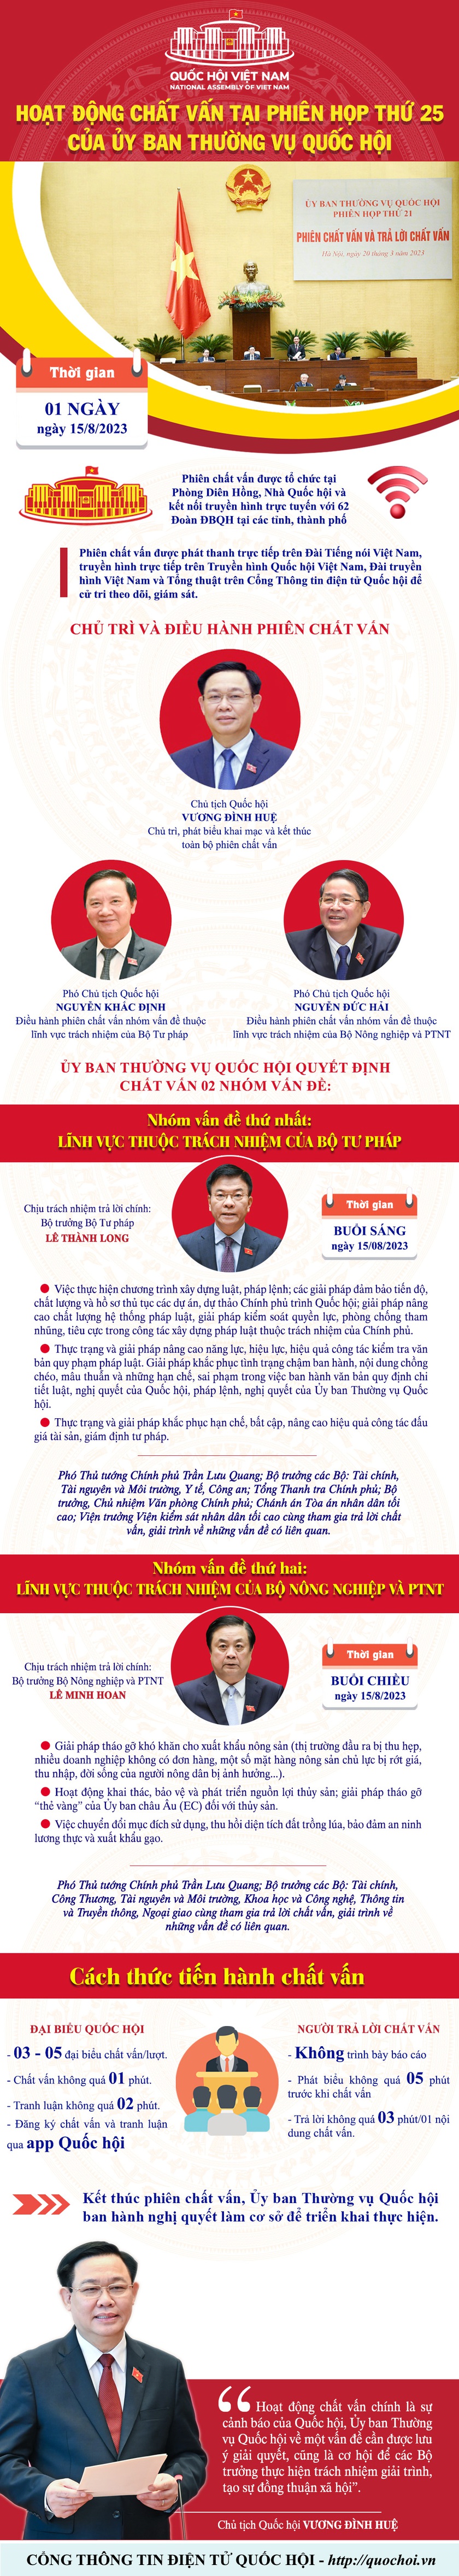 Ngày 15/8, Bộ trưởng Lê Thành Long và Bộ trưởng Lê Minh Hoan sẽ trả lời chất vấn - Ảnh 2.